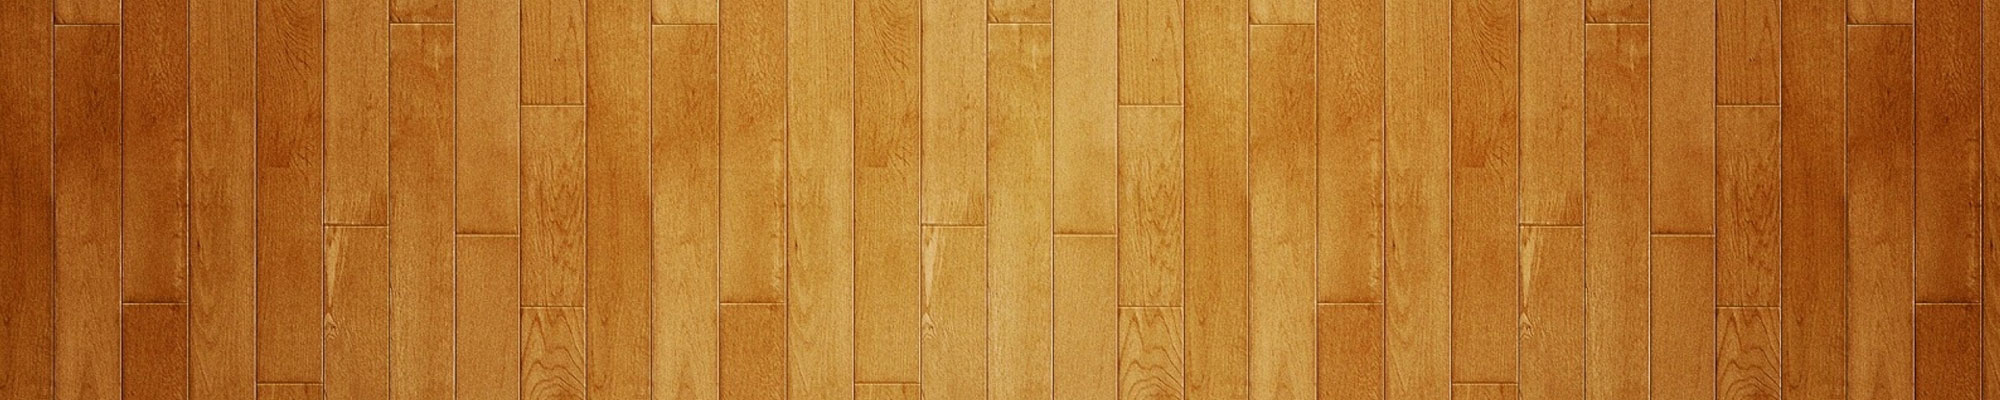 Wood patterned floor